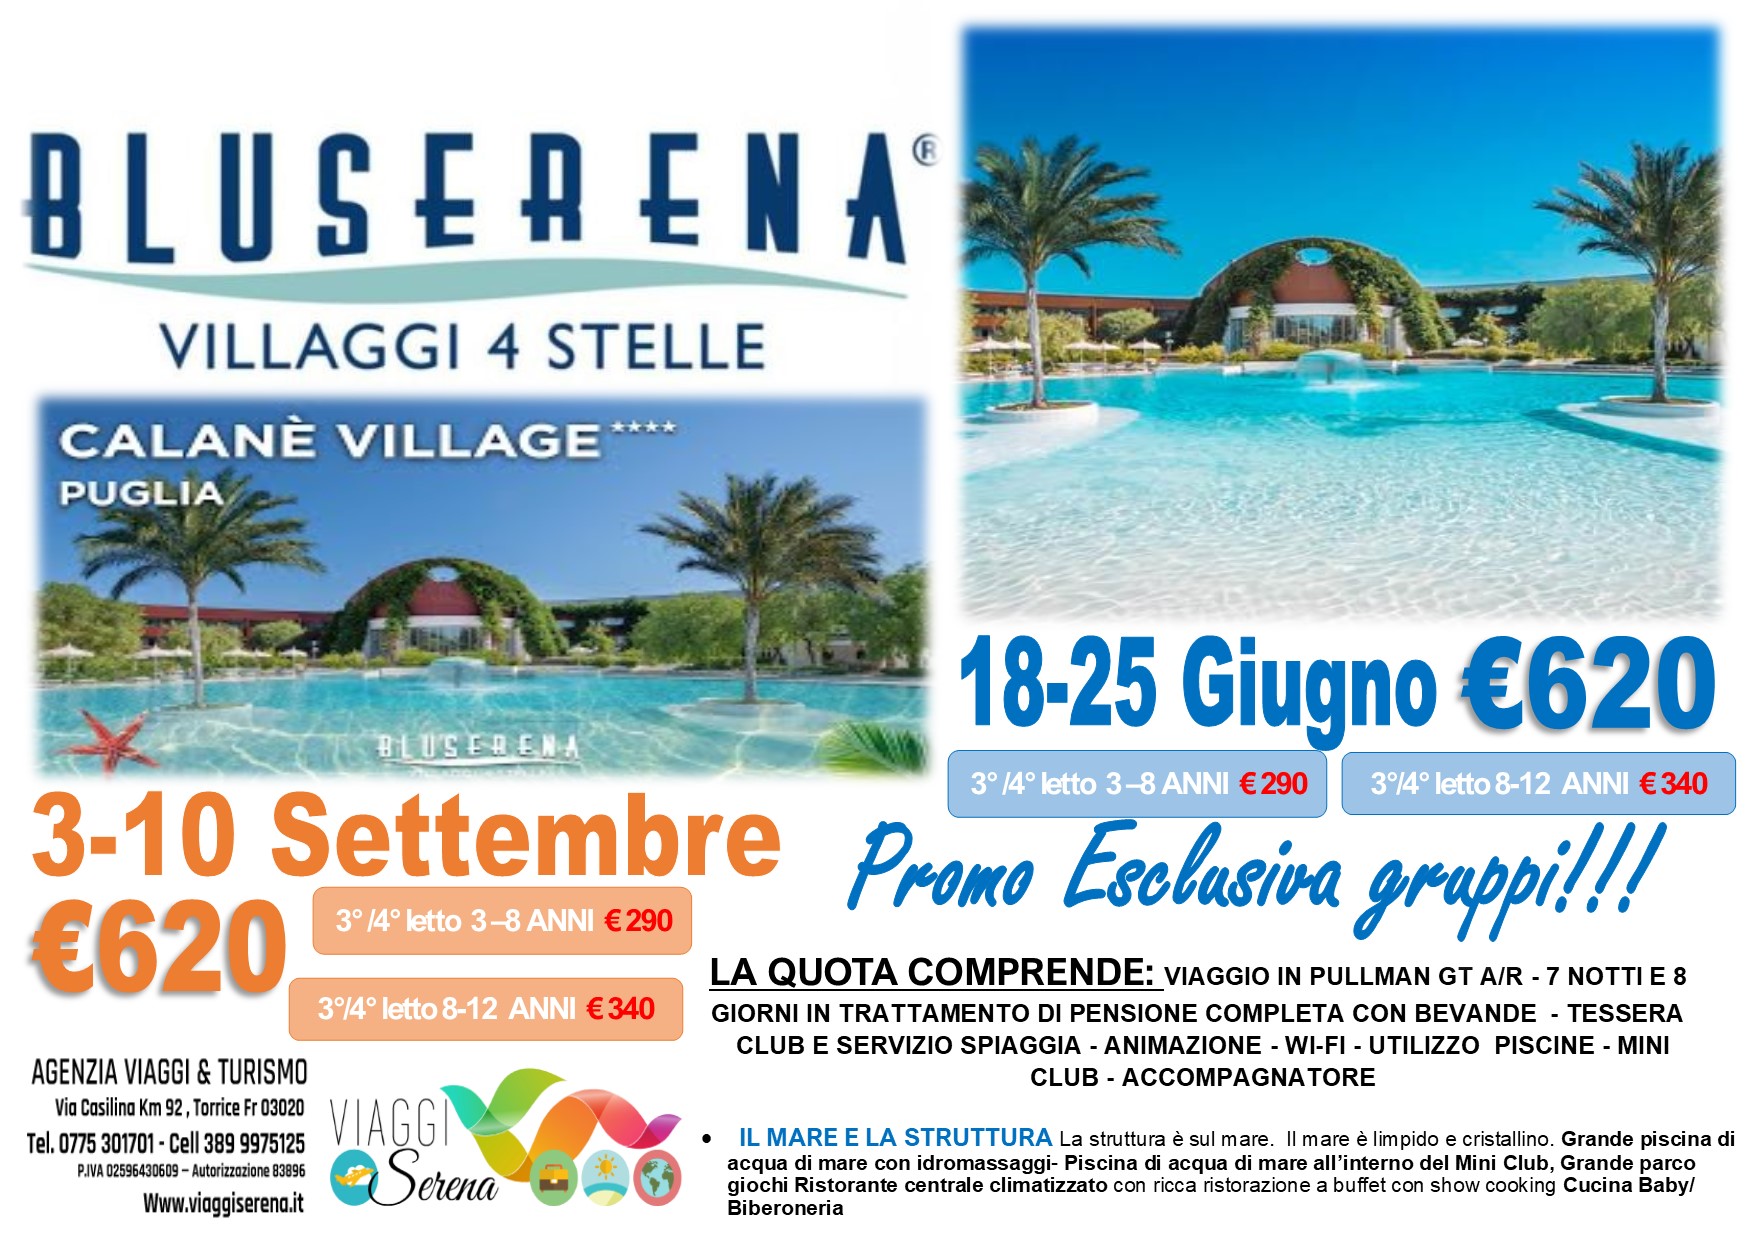 Viaggi di Gruppo: Soggiorno Mare BLU SERENA “Villaggio Calane” 3-10 Settembre €620,00